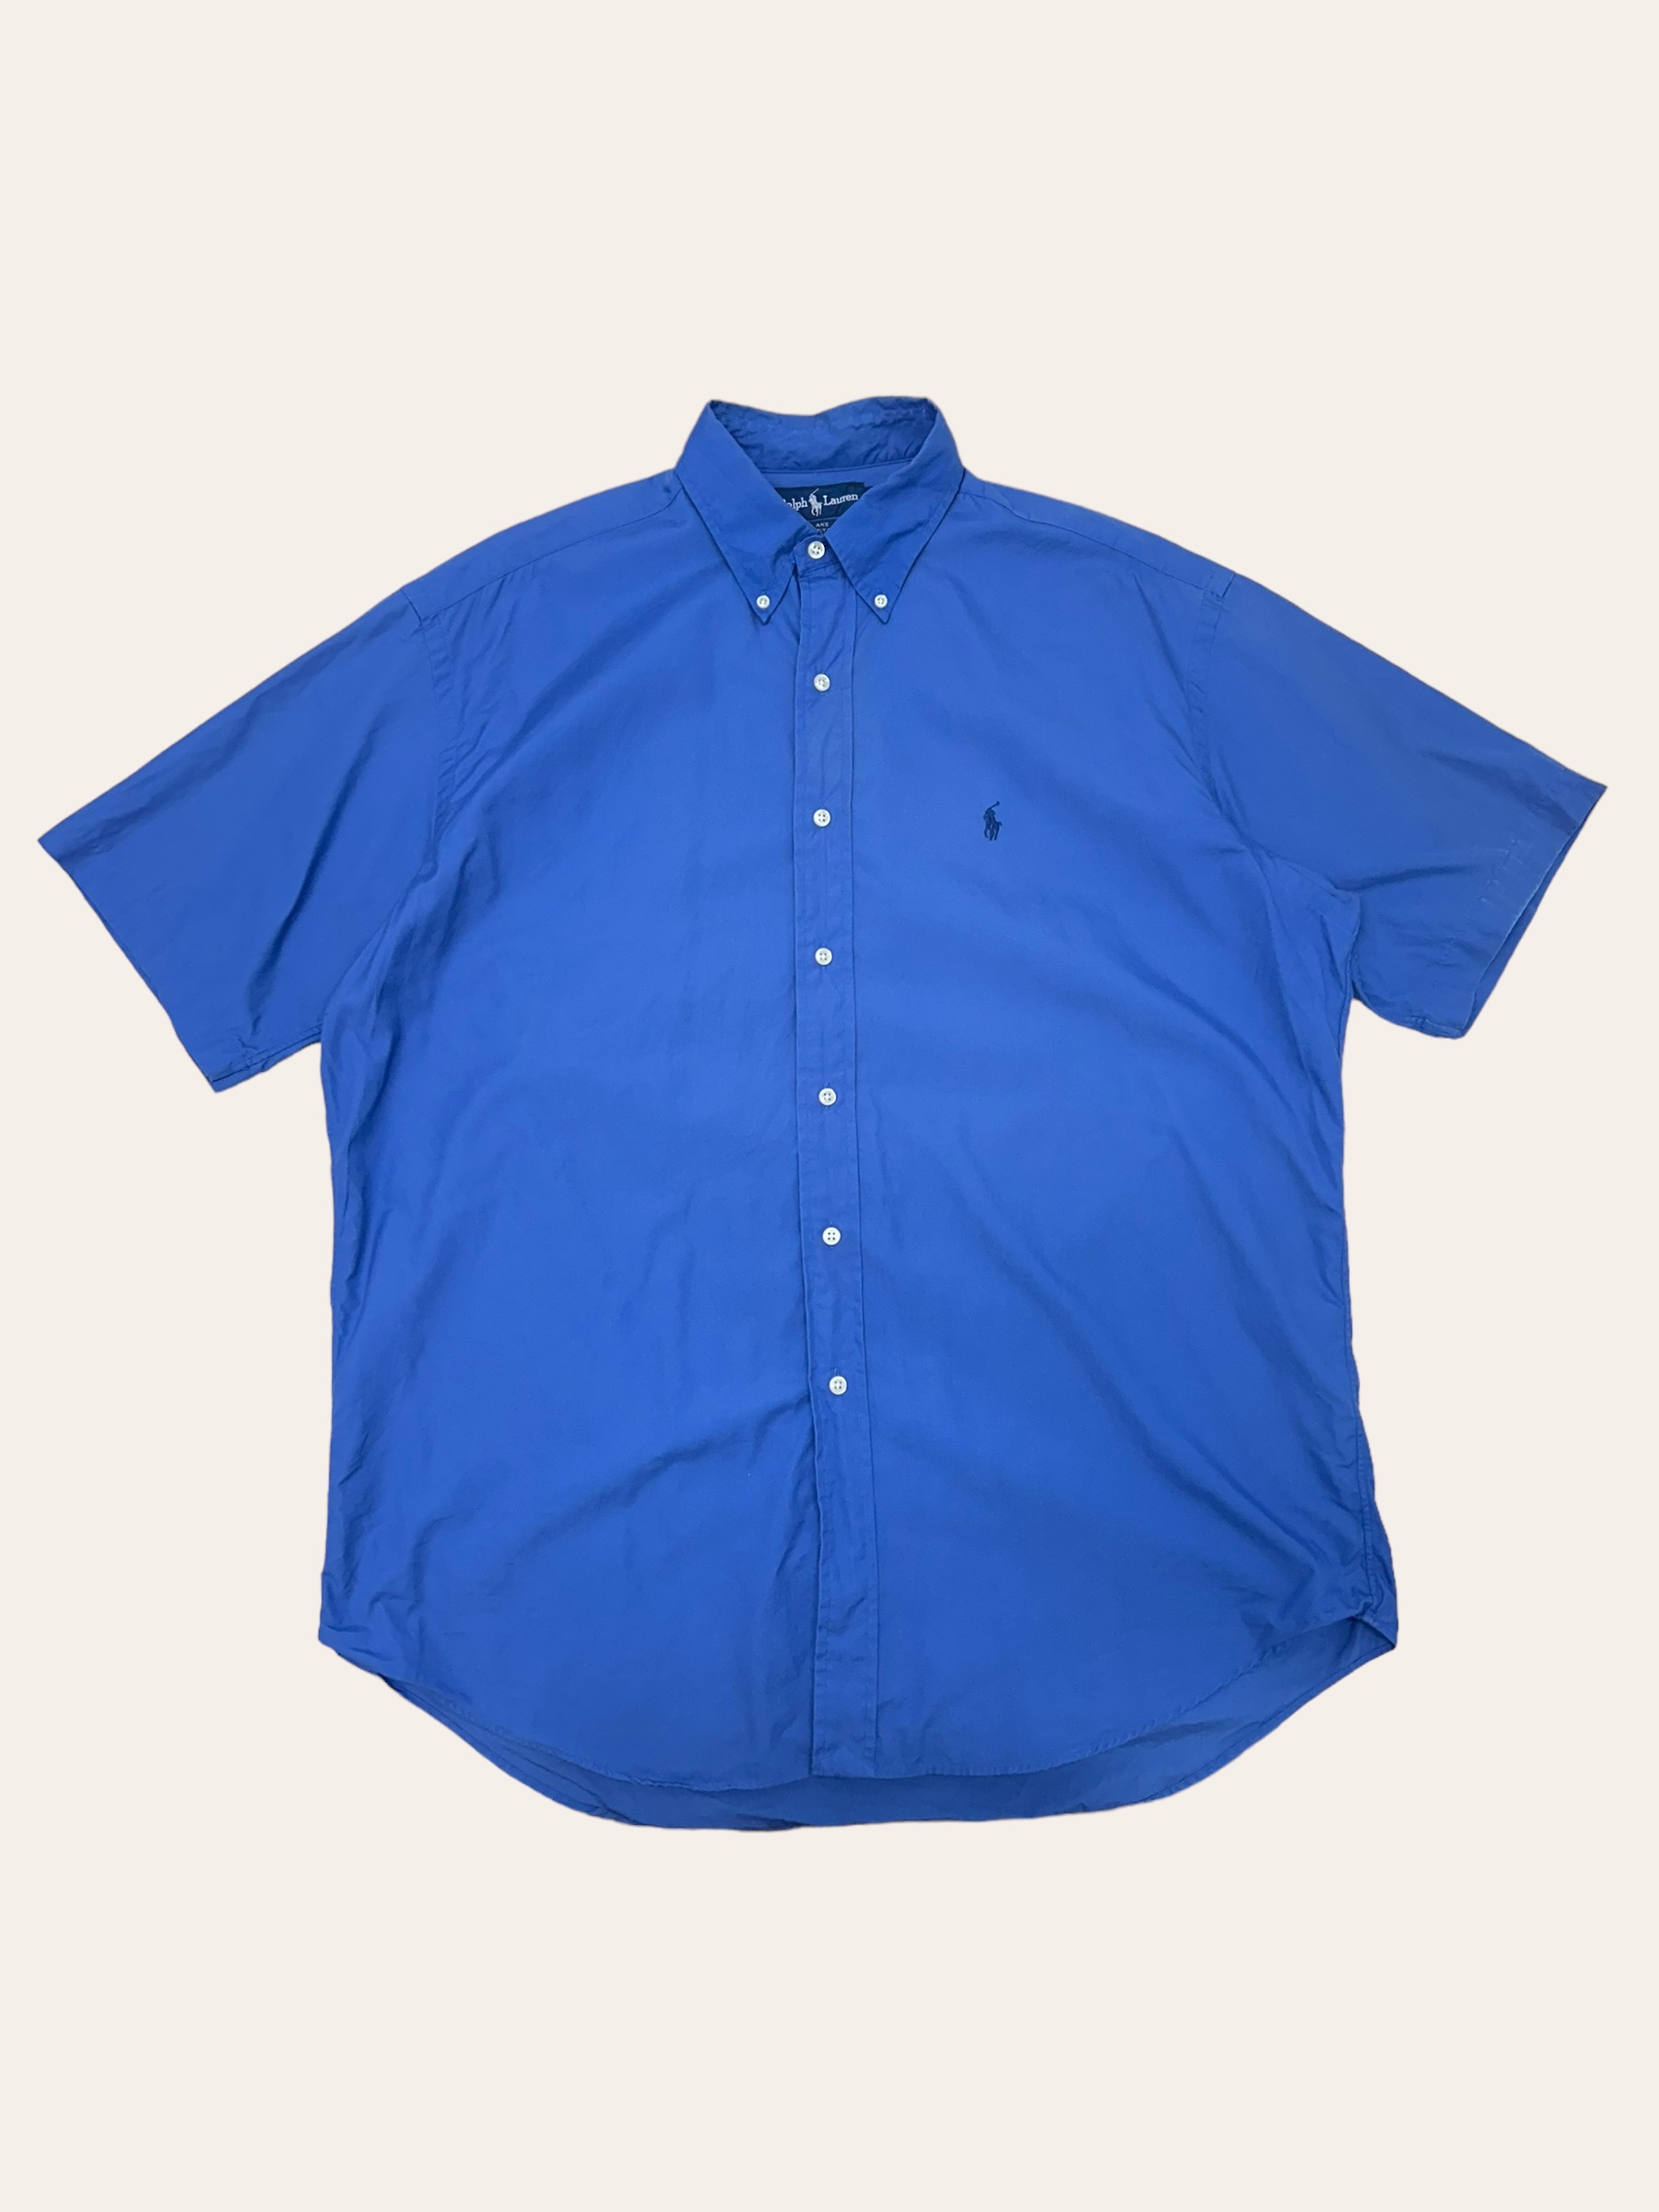 (From USA)Polo ralph lauren deep blue poplin short sleeve shirt L